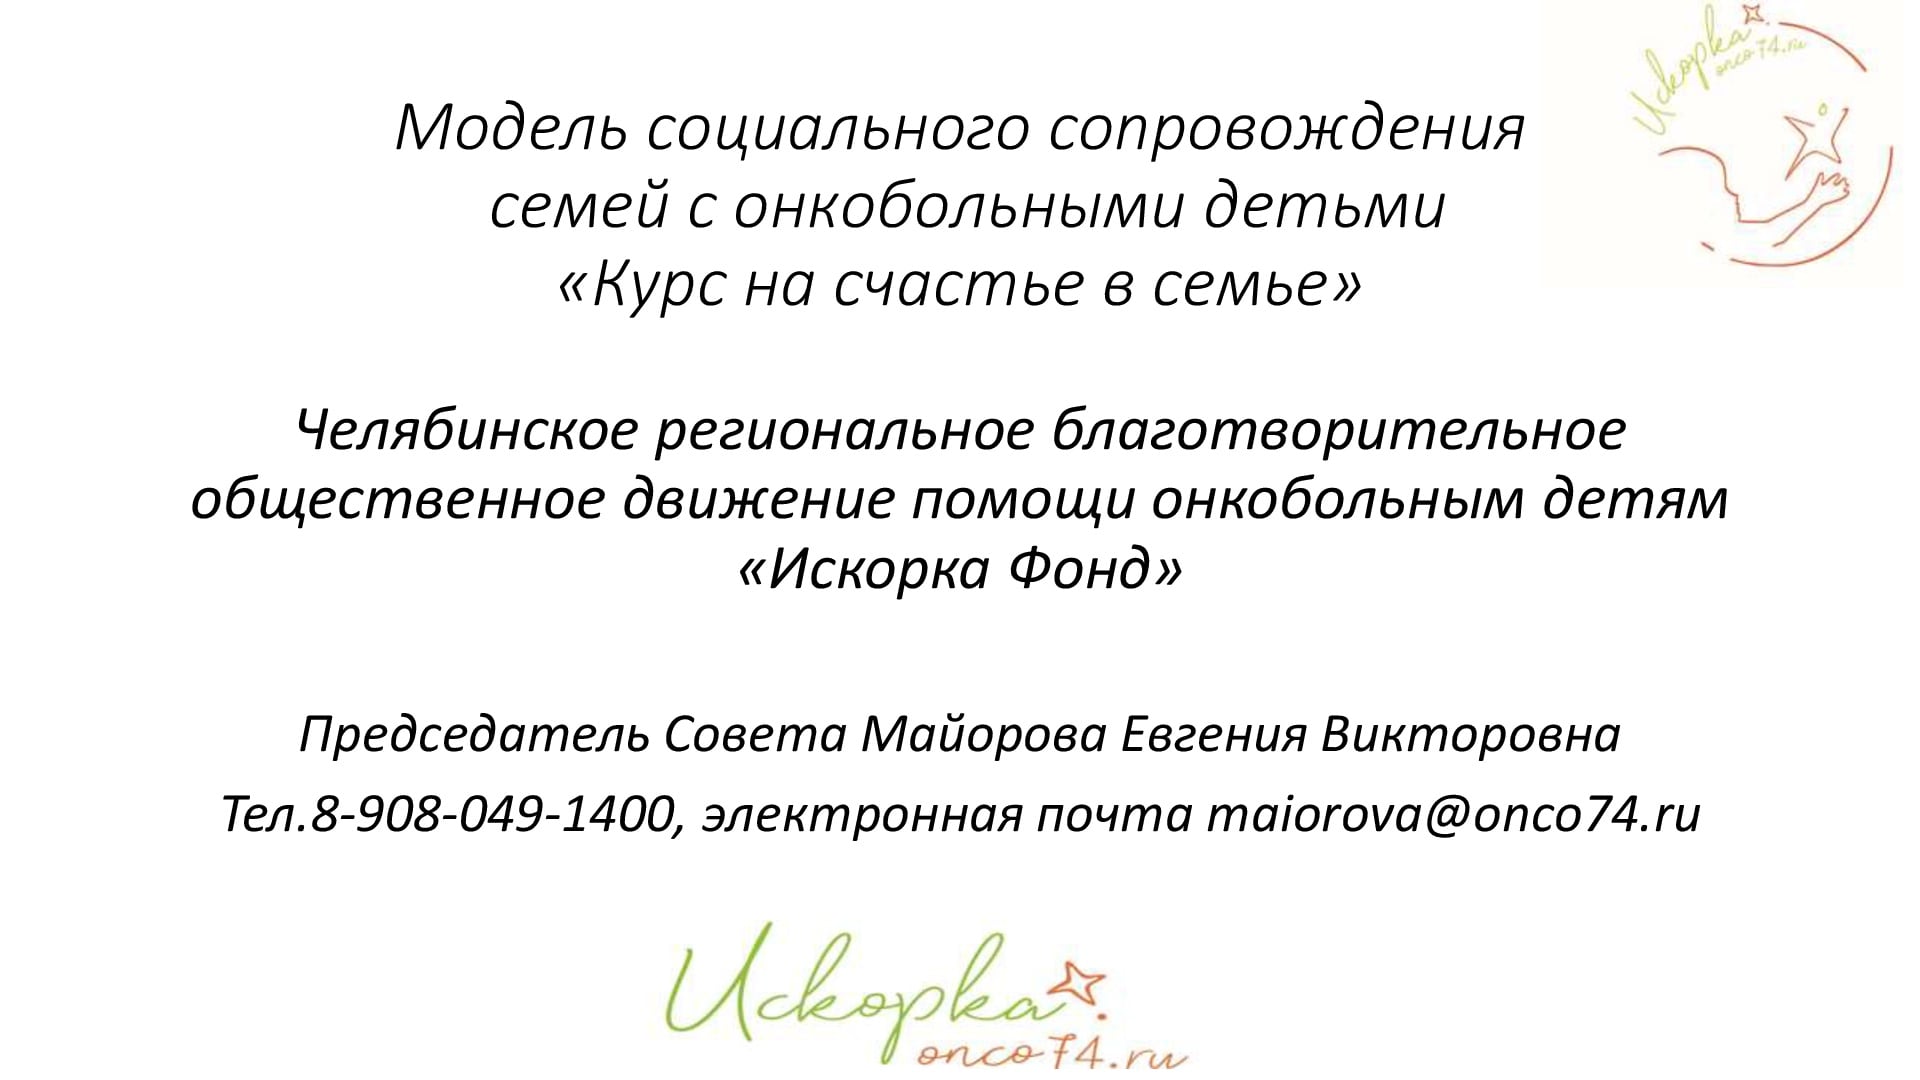 Челябинское региональное благотворительное общественное движение помощи онкобольным детям 